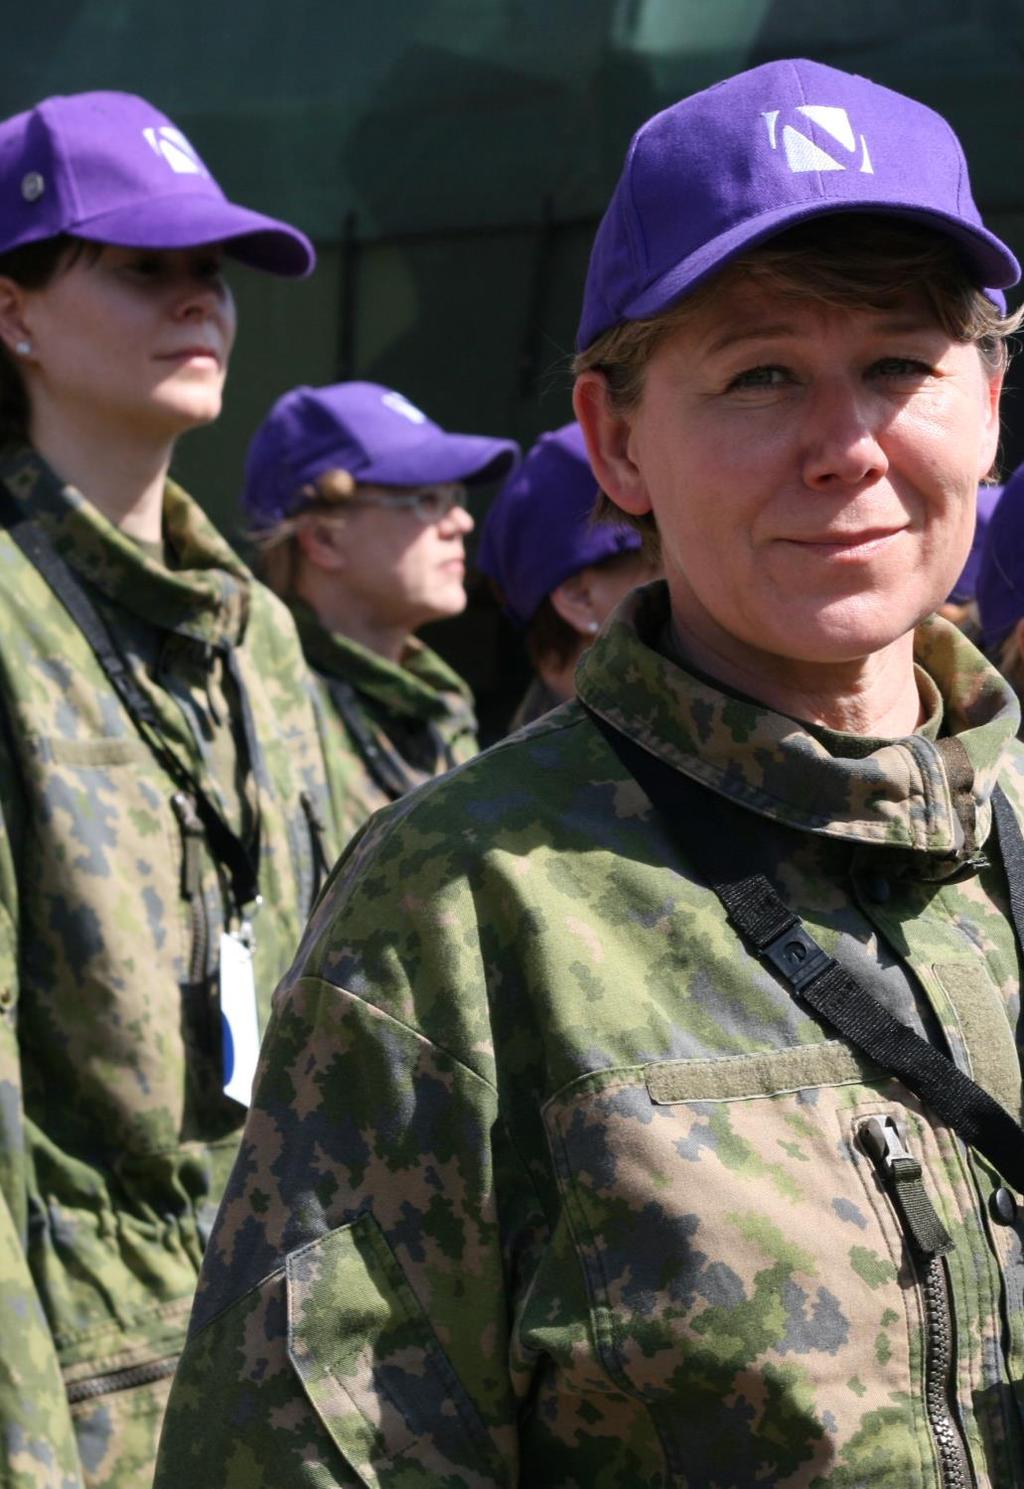 Naisten Valmiusliitto ry Valtakunnallinen yhteistyöjärjestö perustettu vuonna 1997 yhdistää 10 naisten maanpuolustustyötä tekevää ja tukevaa järjestöä jäsenjärjestöissä noin 150 000